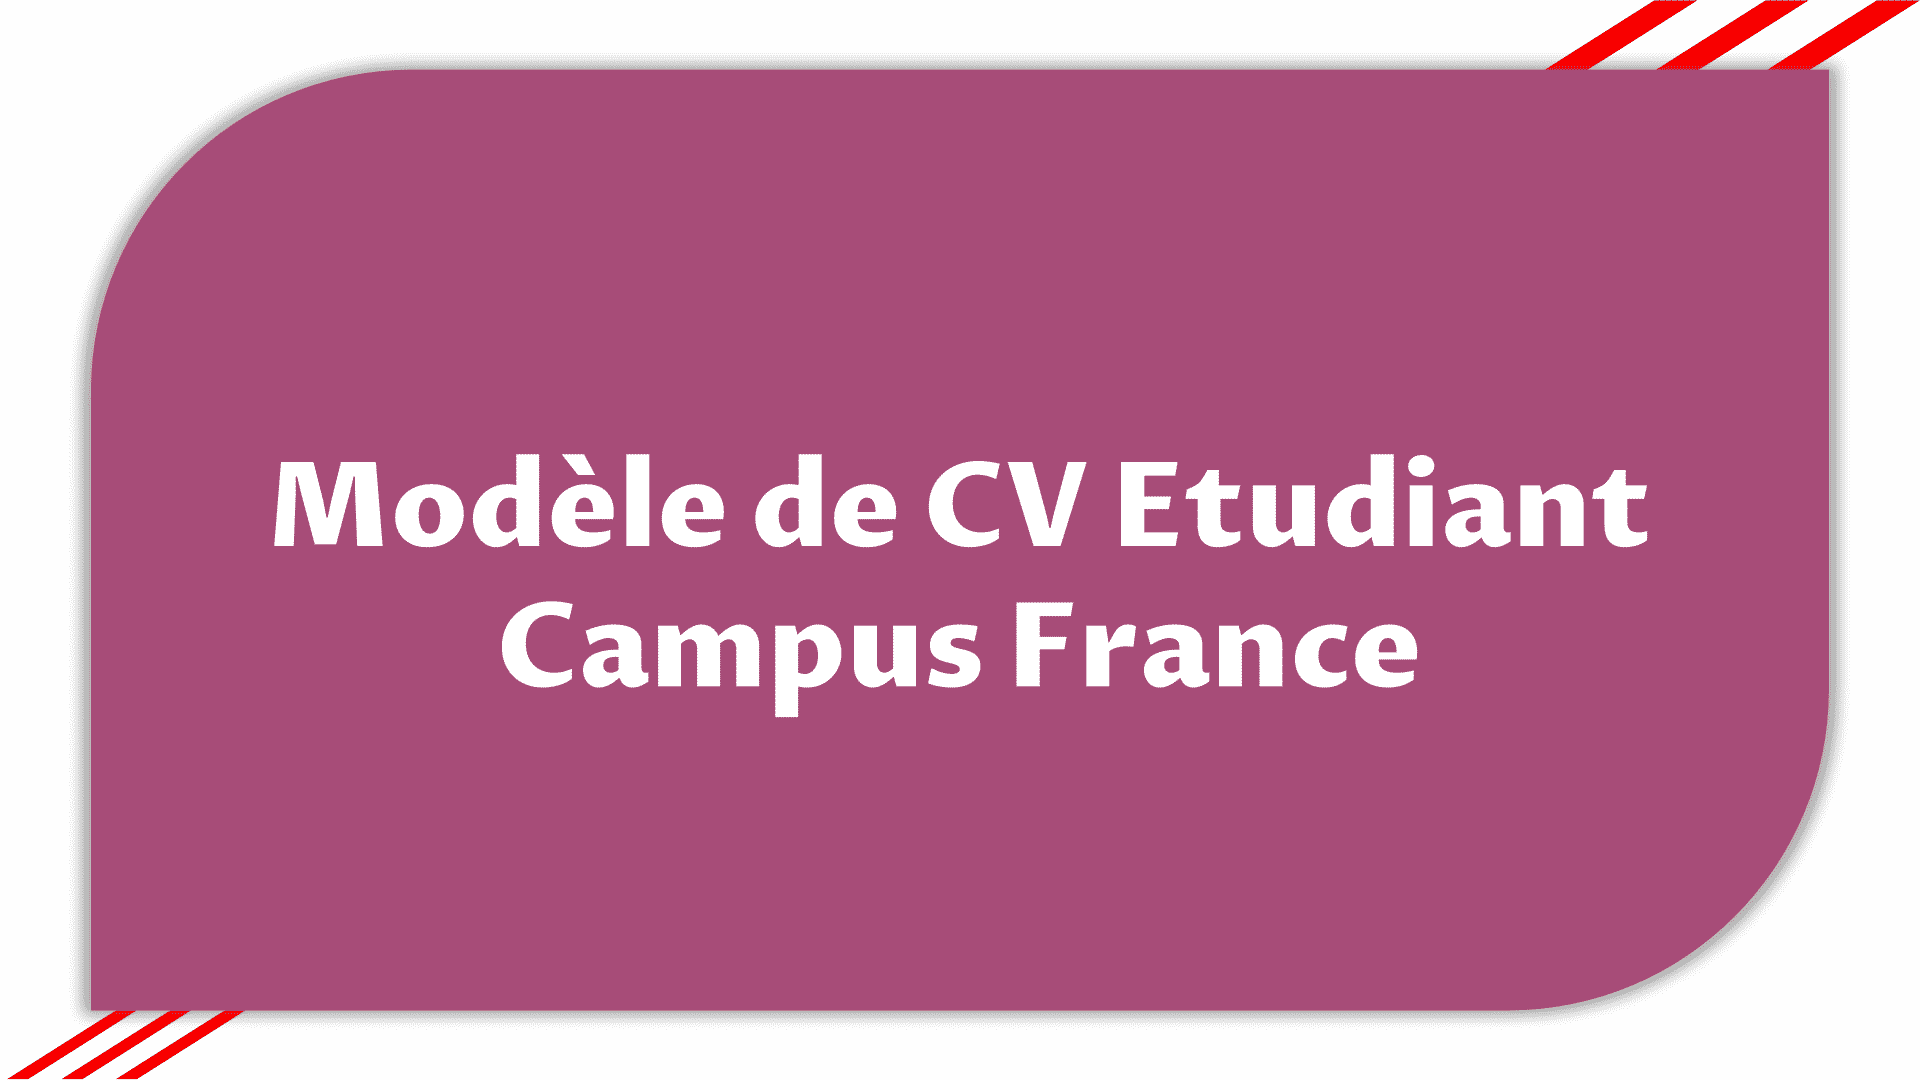 Modèle de CV Etudiant Campus France - Modèle Gratuit